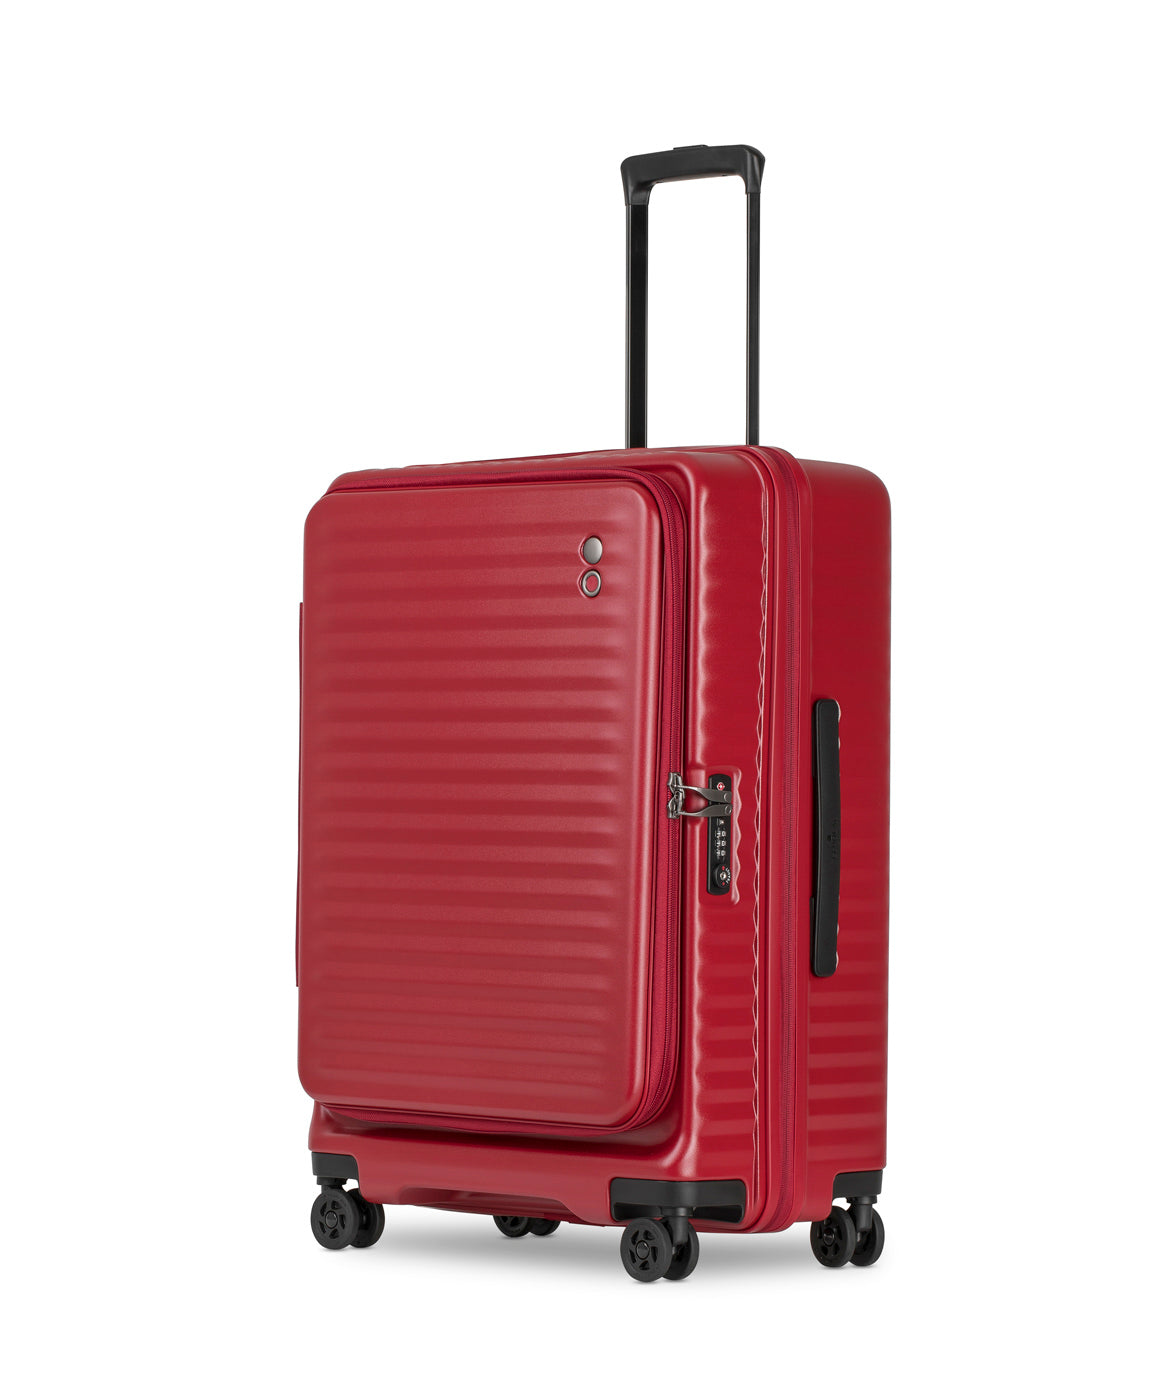 Echolac Celestra Suitcase, Medium 65 cm, Rot